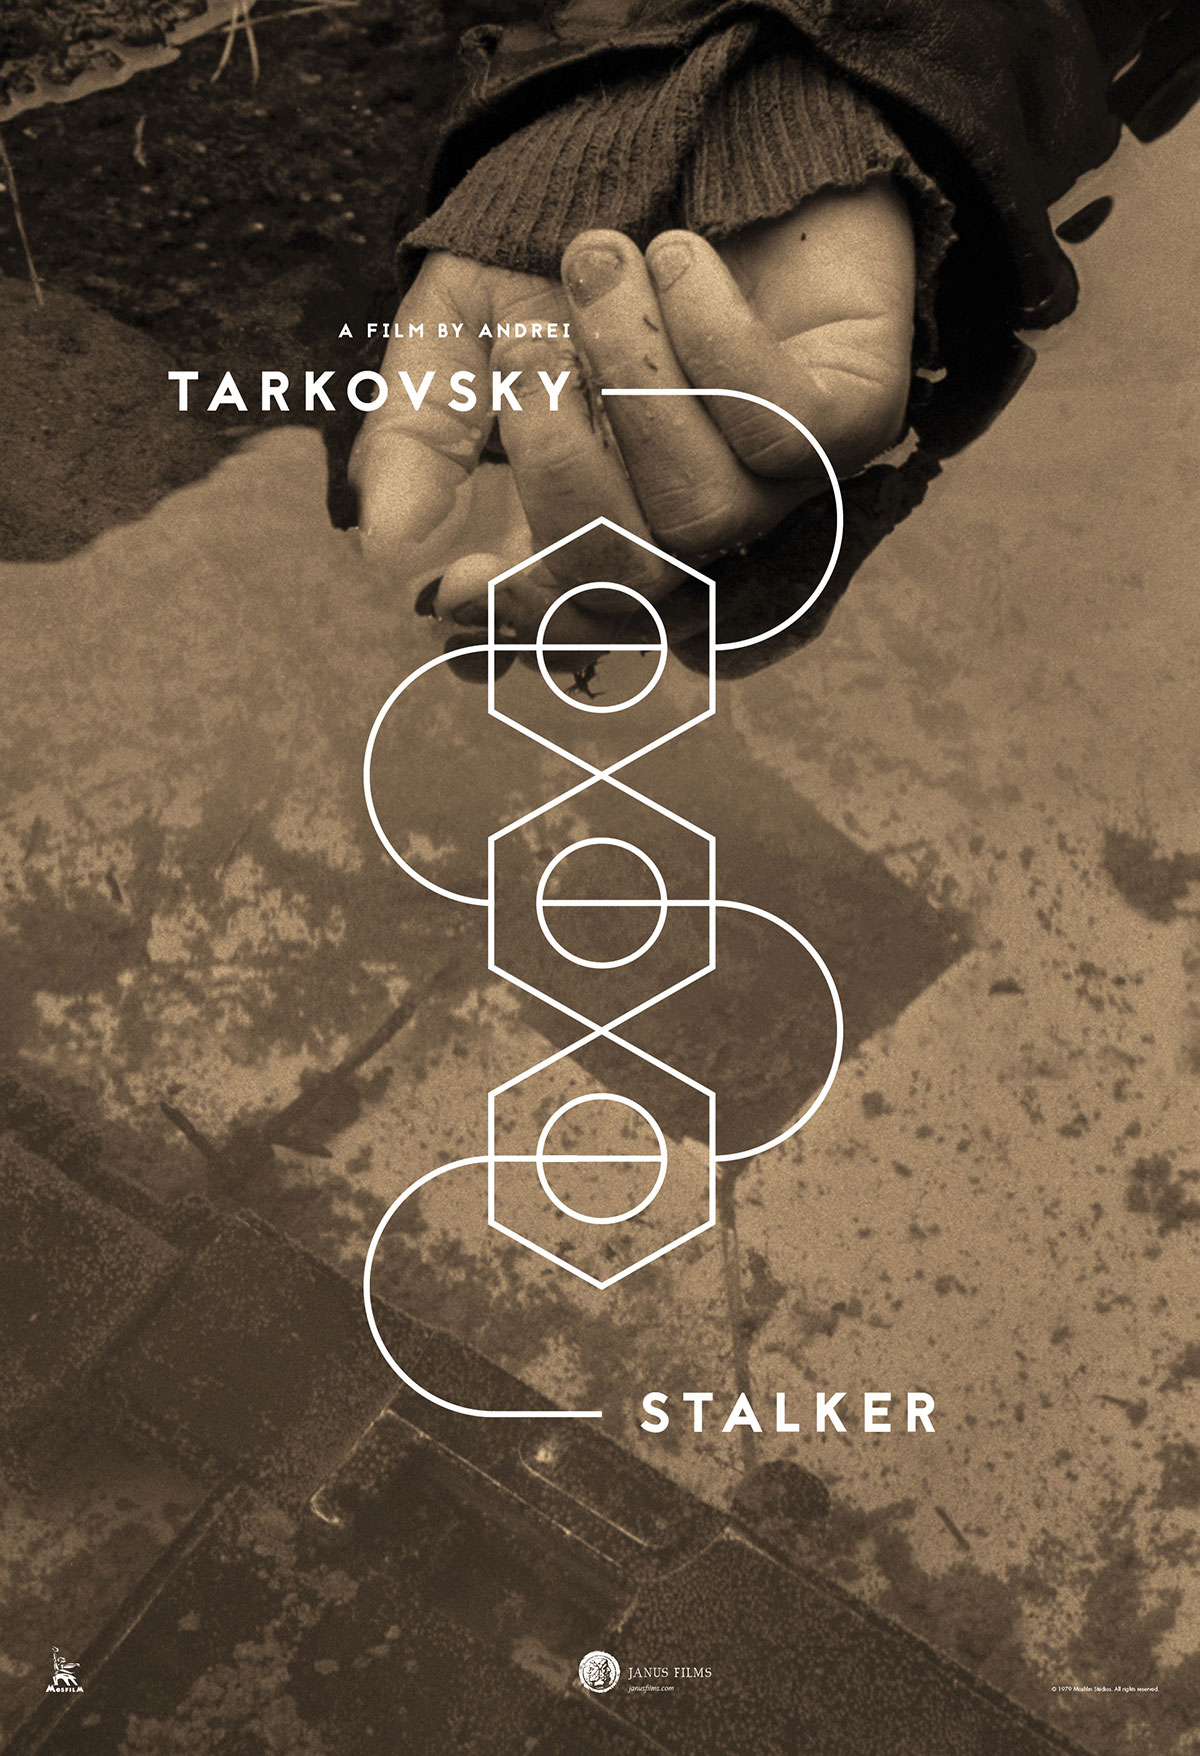 Stalker film poster